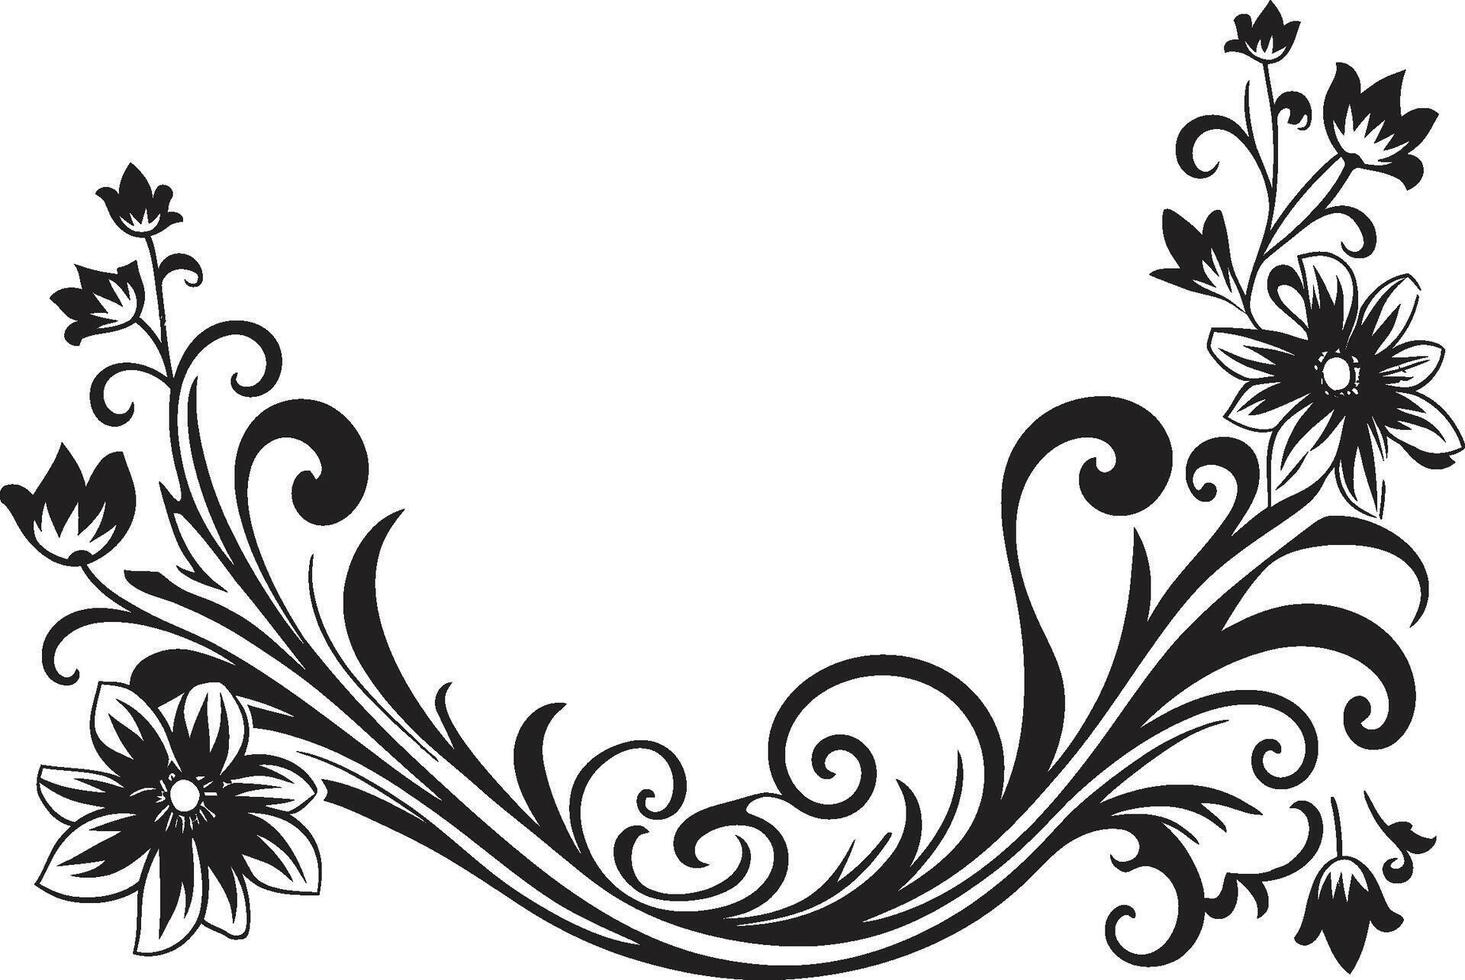 künstlerisch Verzierungen glatt schwarz Logo Hervorheben dekorativ Elemente geformt Spiralen elegant dekorativ Gekritzel Symbol im einfarbig vektor